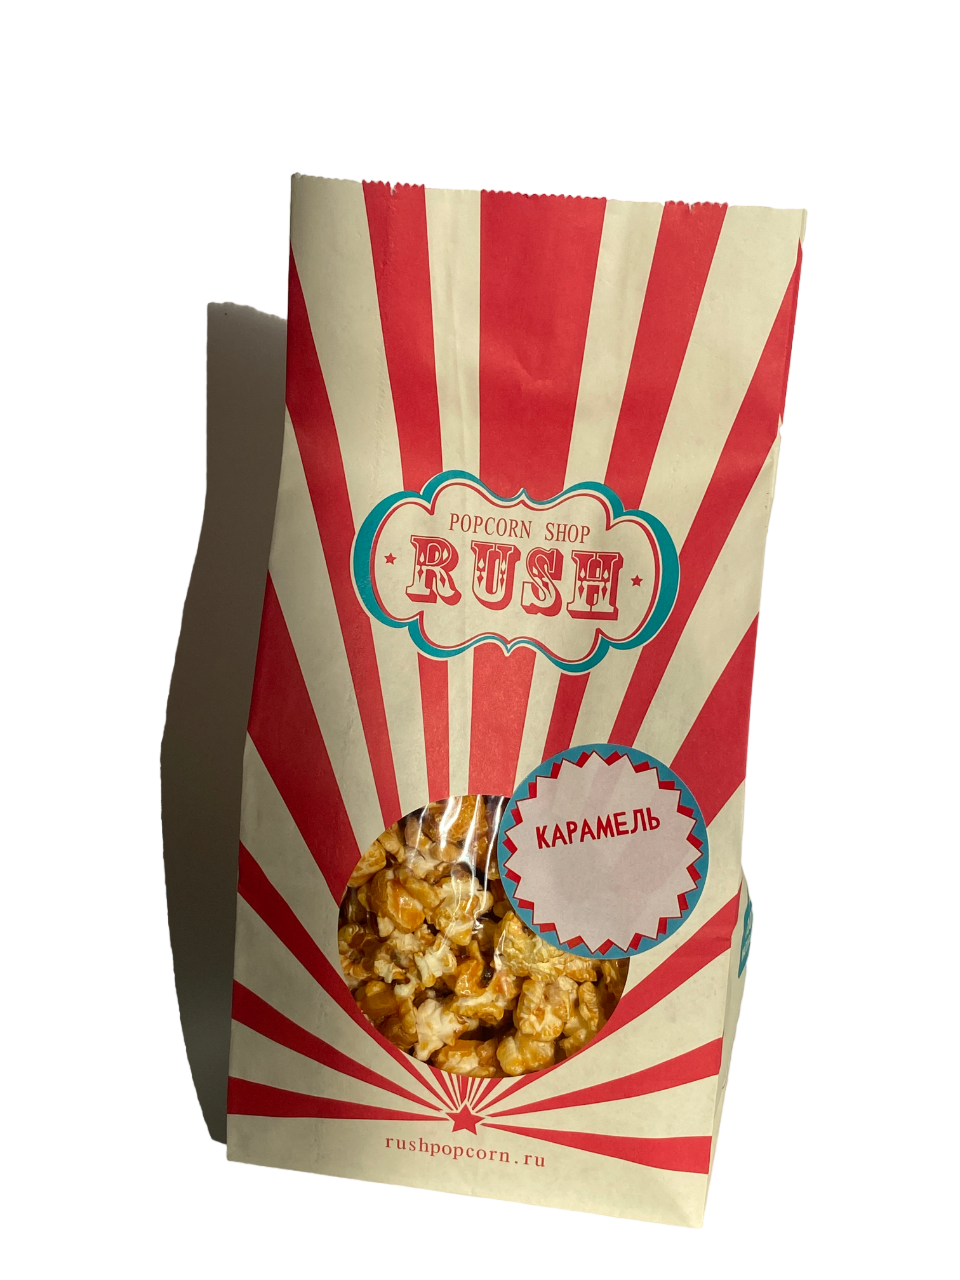 Попкорн Popcorn shop rush готовый, карамельный, 100 г